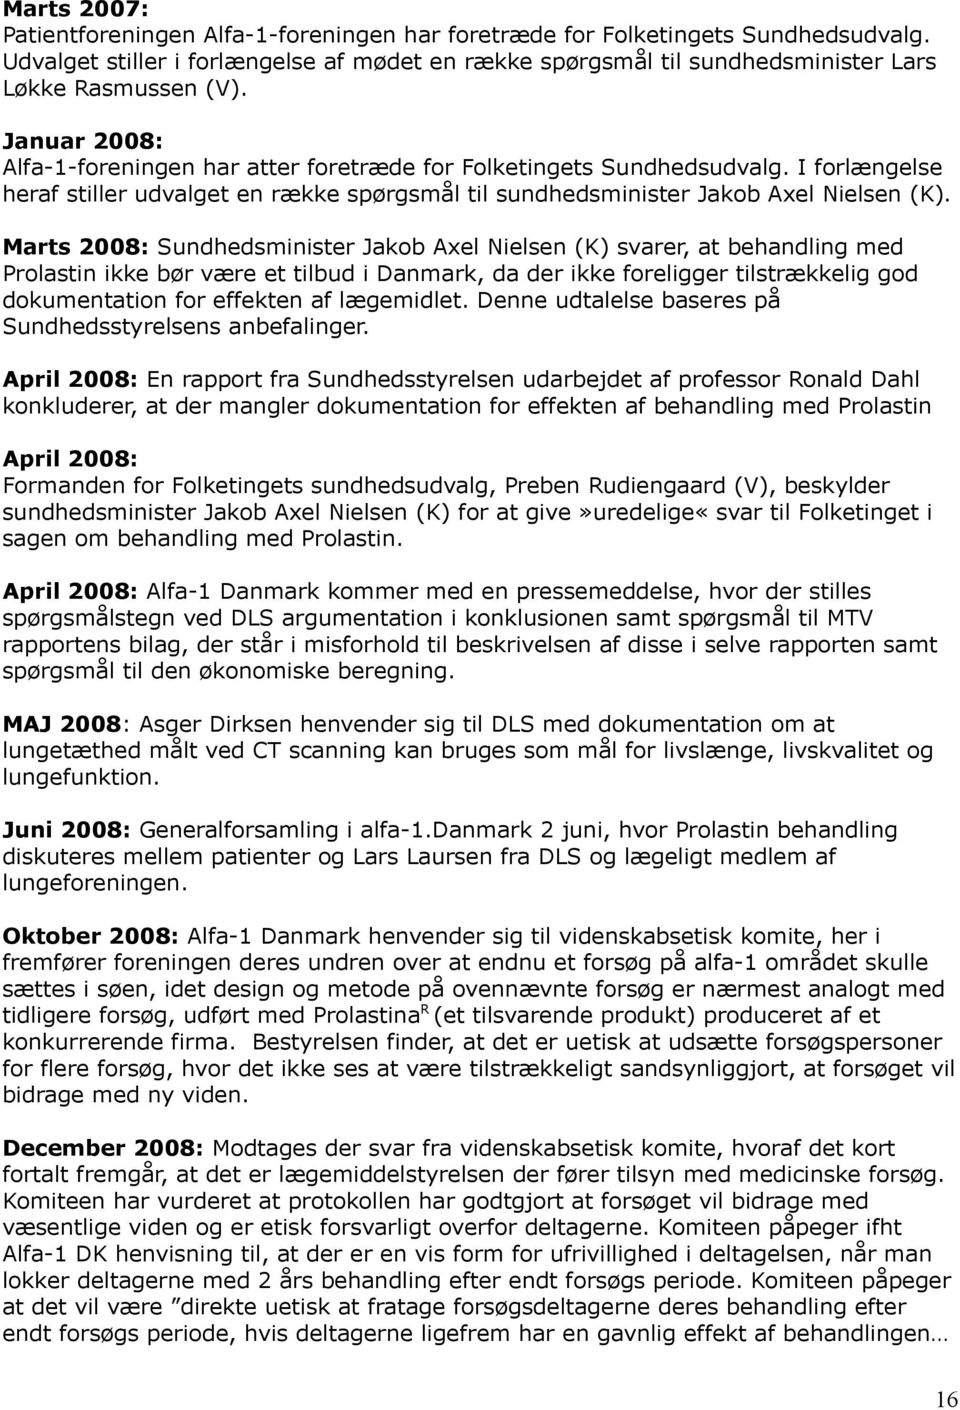 Marts 2008: Sundhedsminister Jakob Axel Nielsen (K) svarer, at behandling med Prolastin ikke bør være et tilbud i Danmark, da der ikke foreligger tilstrækkelig god dokumentation for effekten af